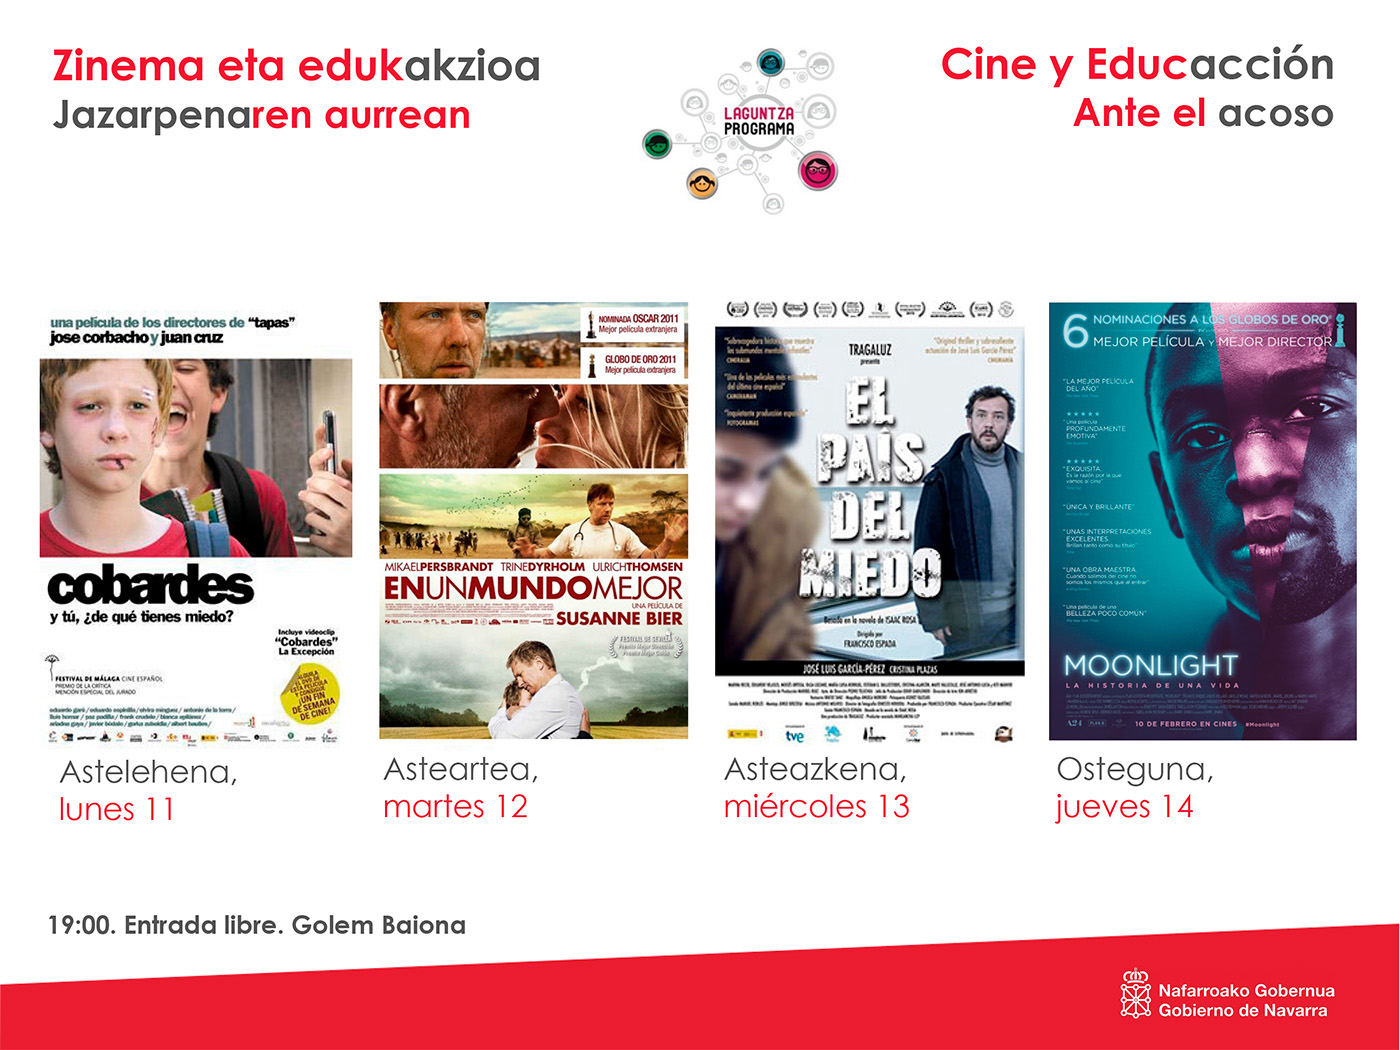 Cine-fórum “Cine y Educacción ante el Acoso” desde el 11 al 14 de diciembre